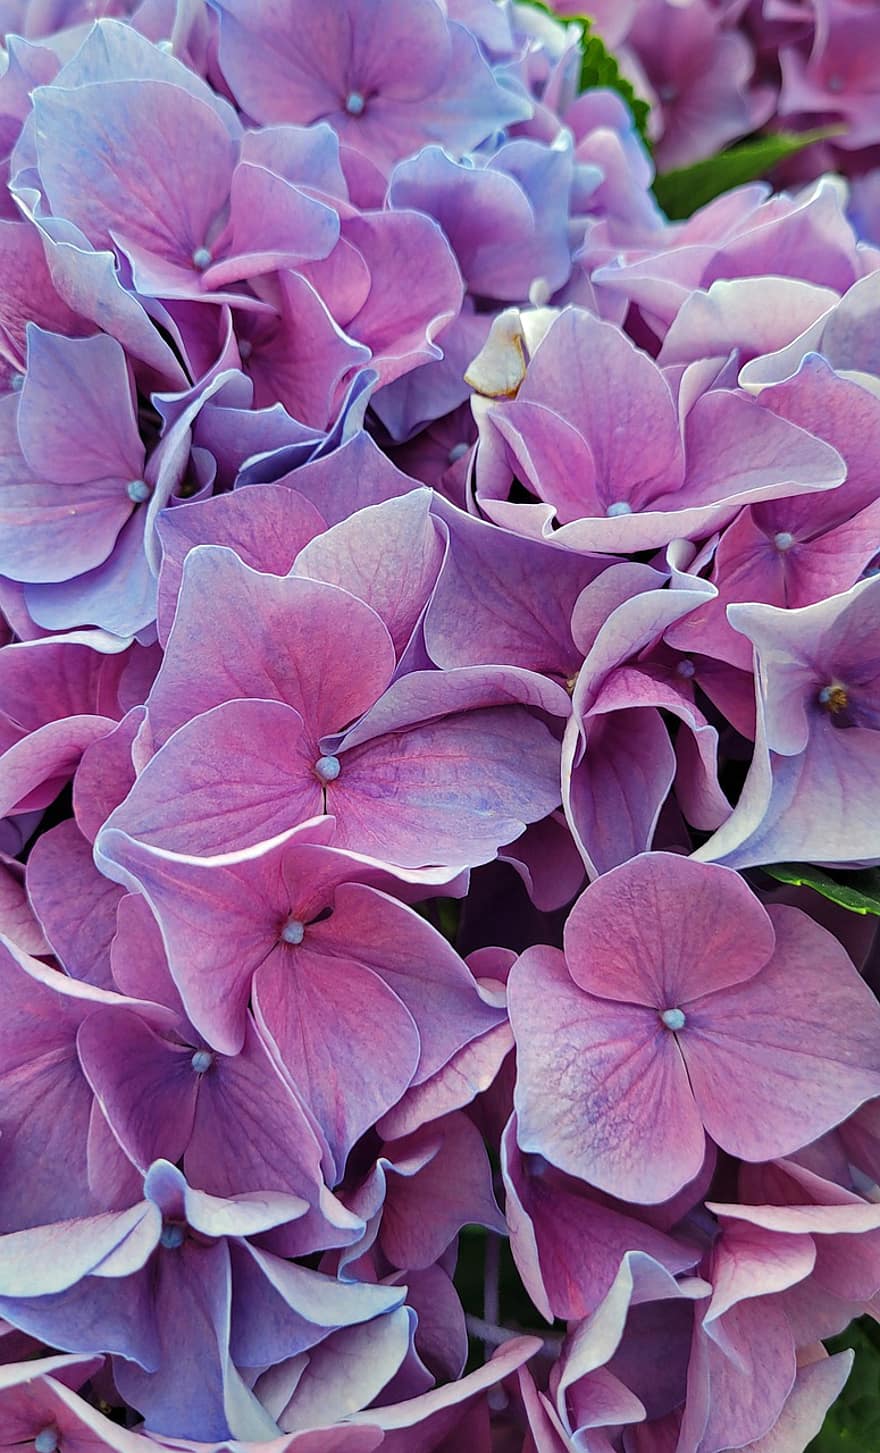 hortensie, flori, grădină, violet flori, violete petale, petale, a inflori, inflori, floră, plantă, natură